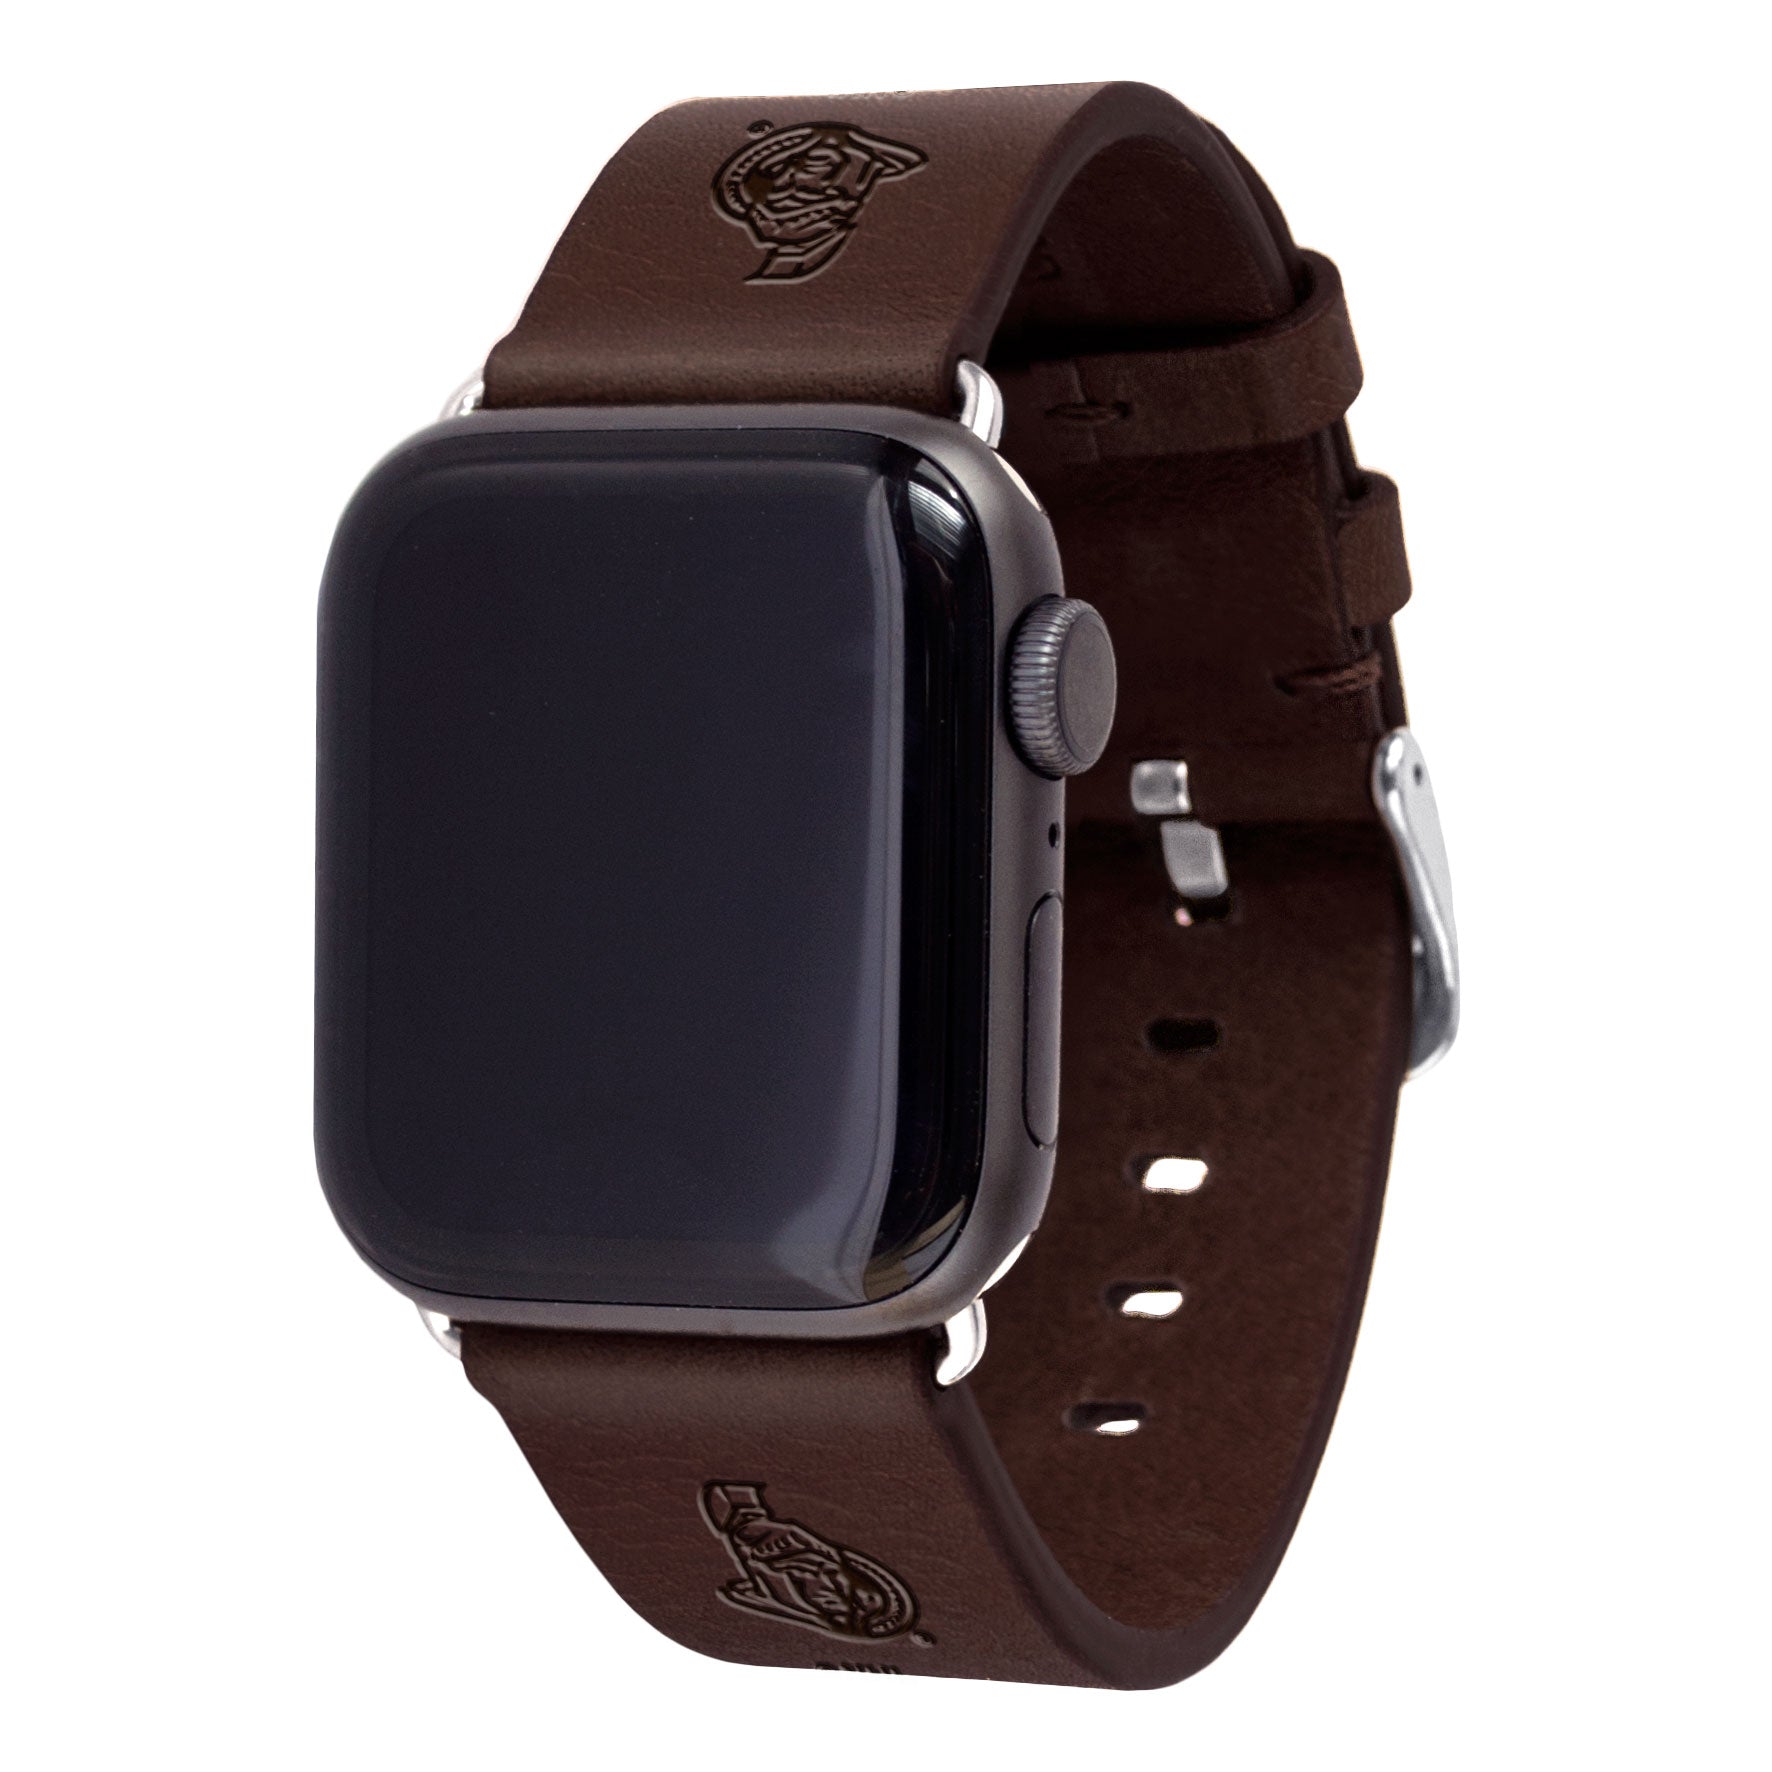 Ottawa Senators Leather Apple Watch Band - AffinityBands